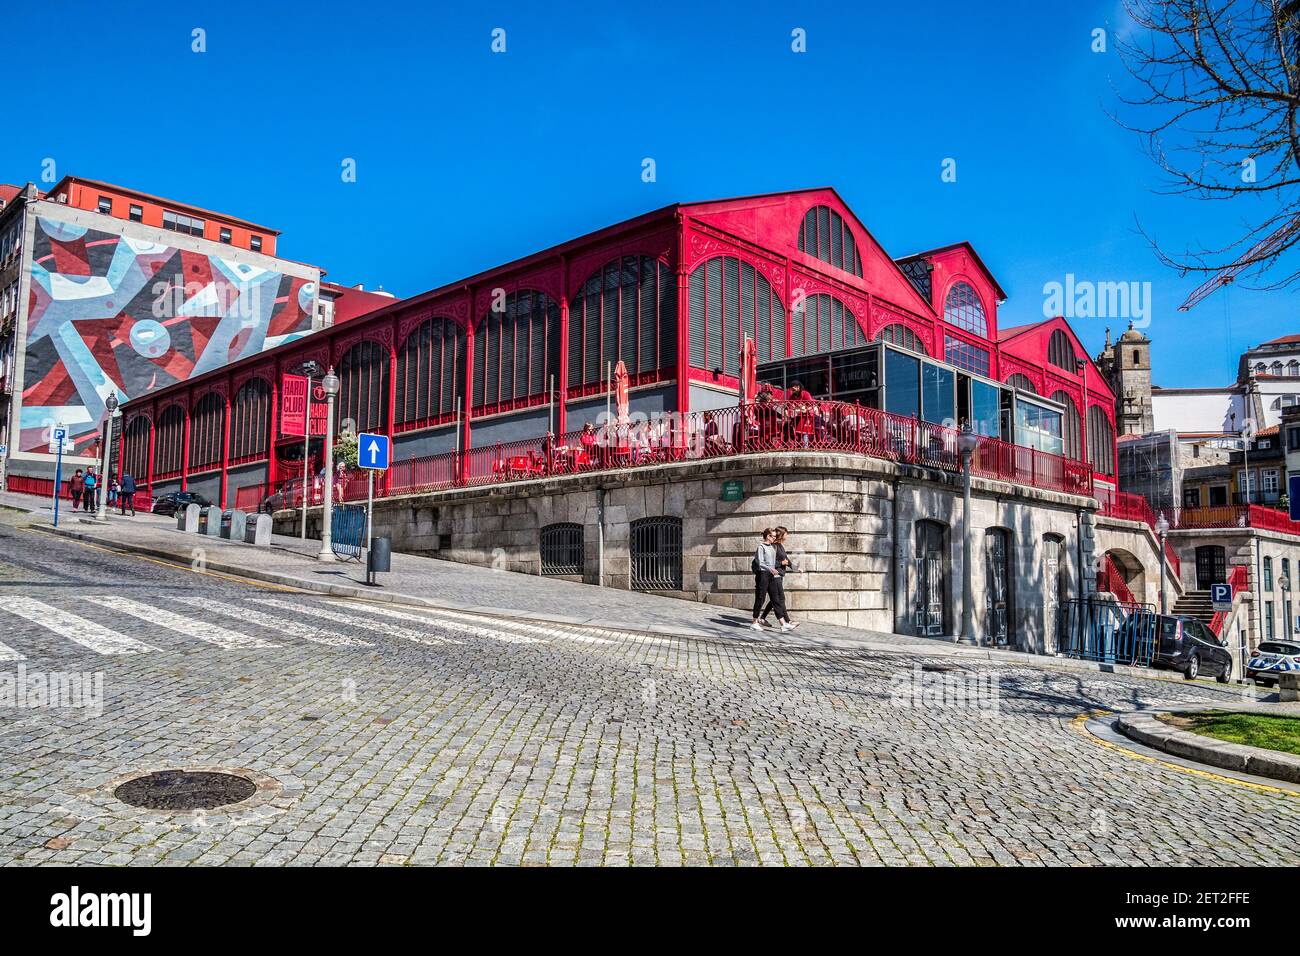 10 marzo 2020: Porto, Portogallo - il Mercado Ferreira Borges, una sala del mercato costruita nel 1880 a Porto, oggi nightclub e ristorante. Foto Stock